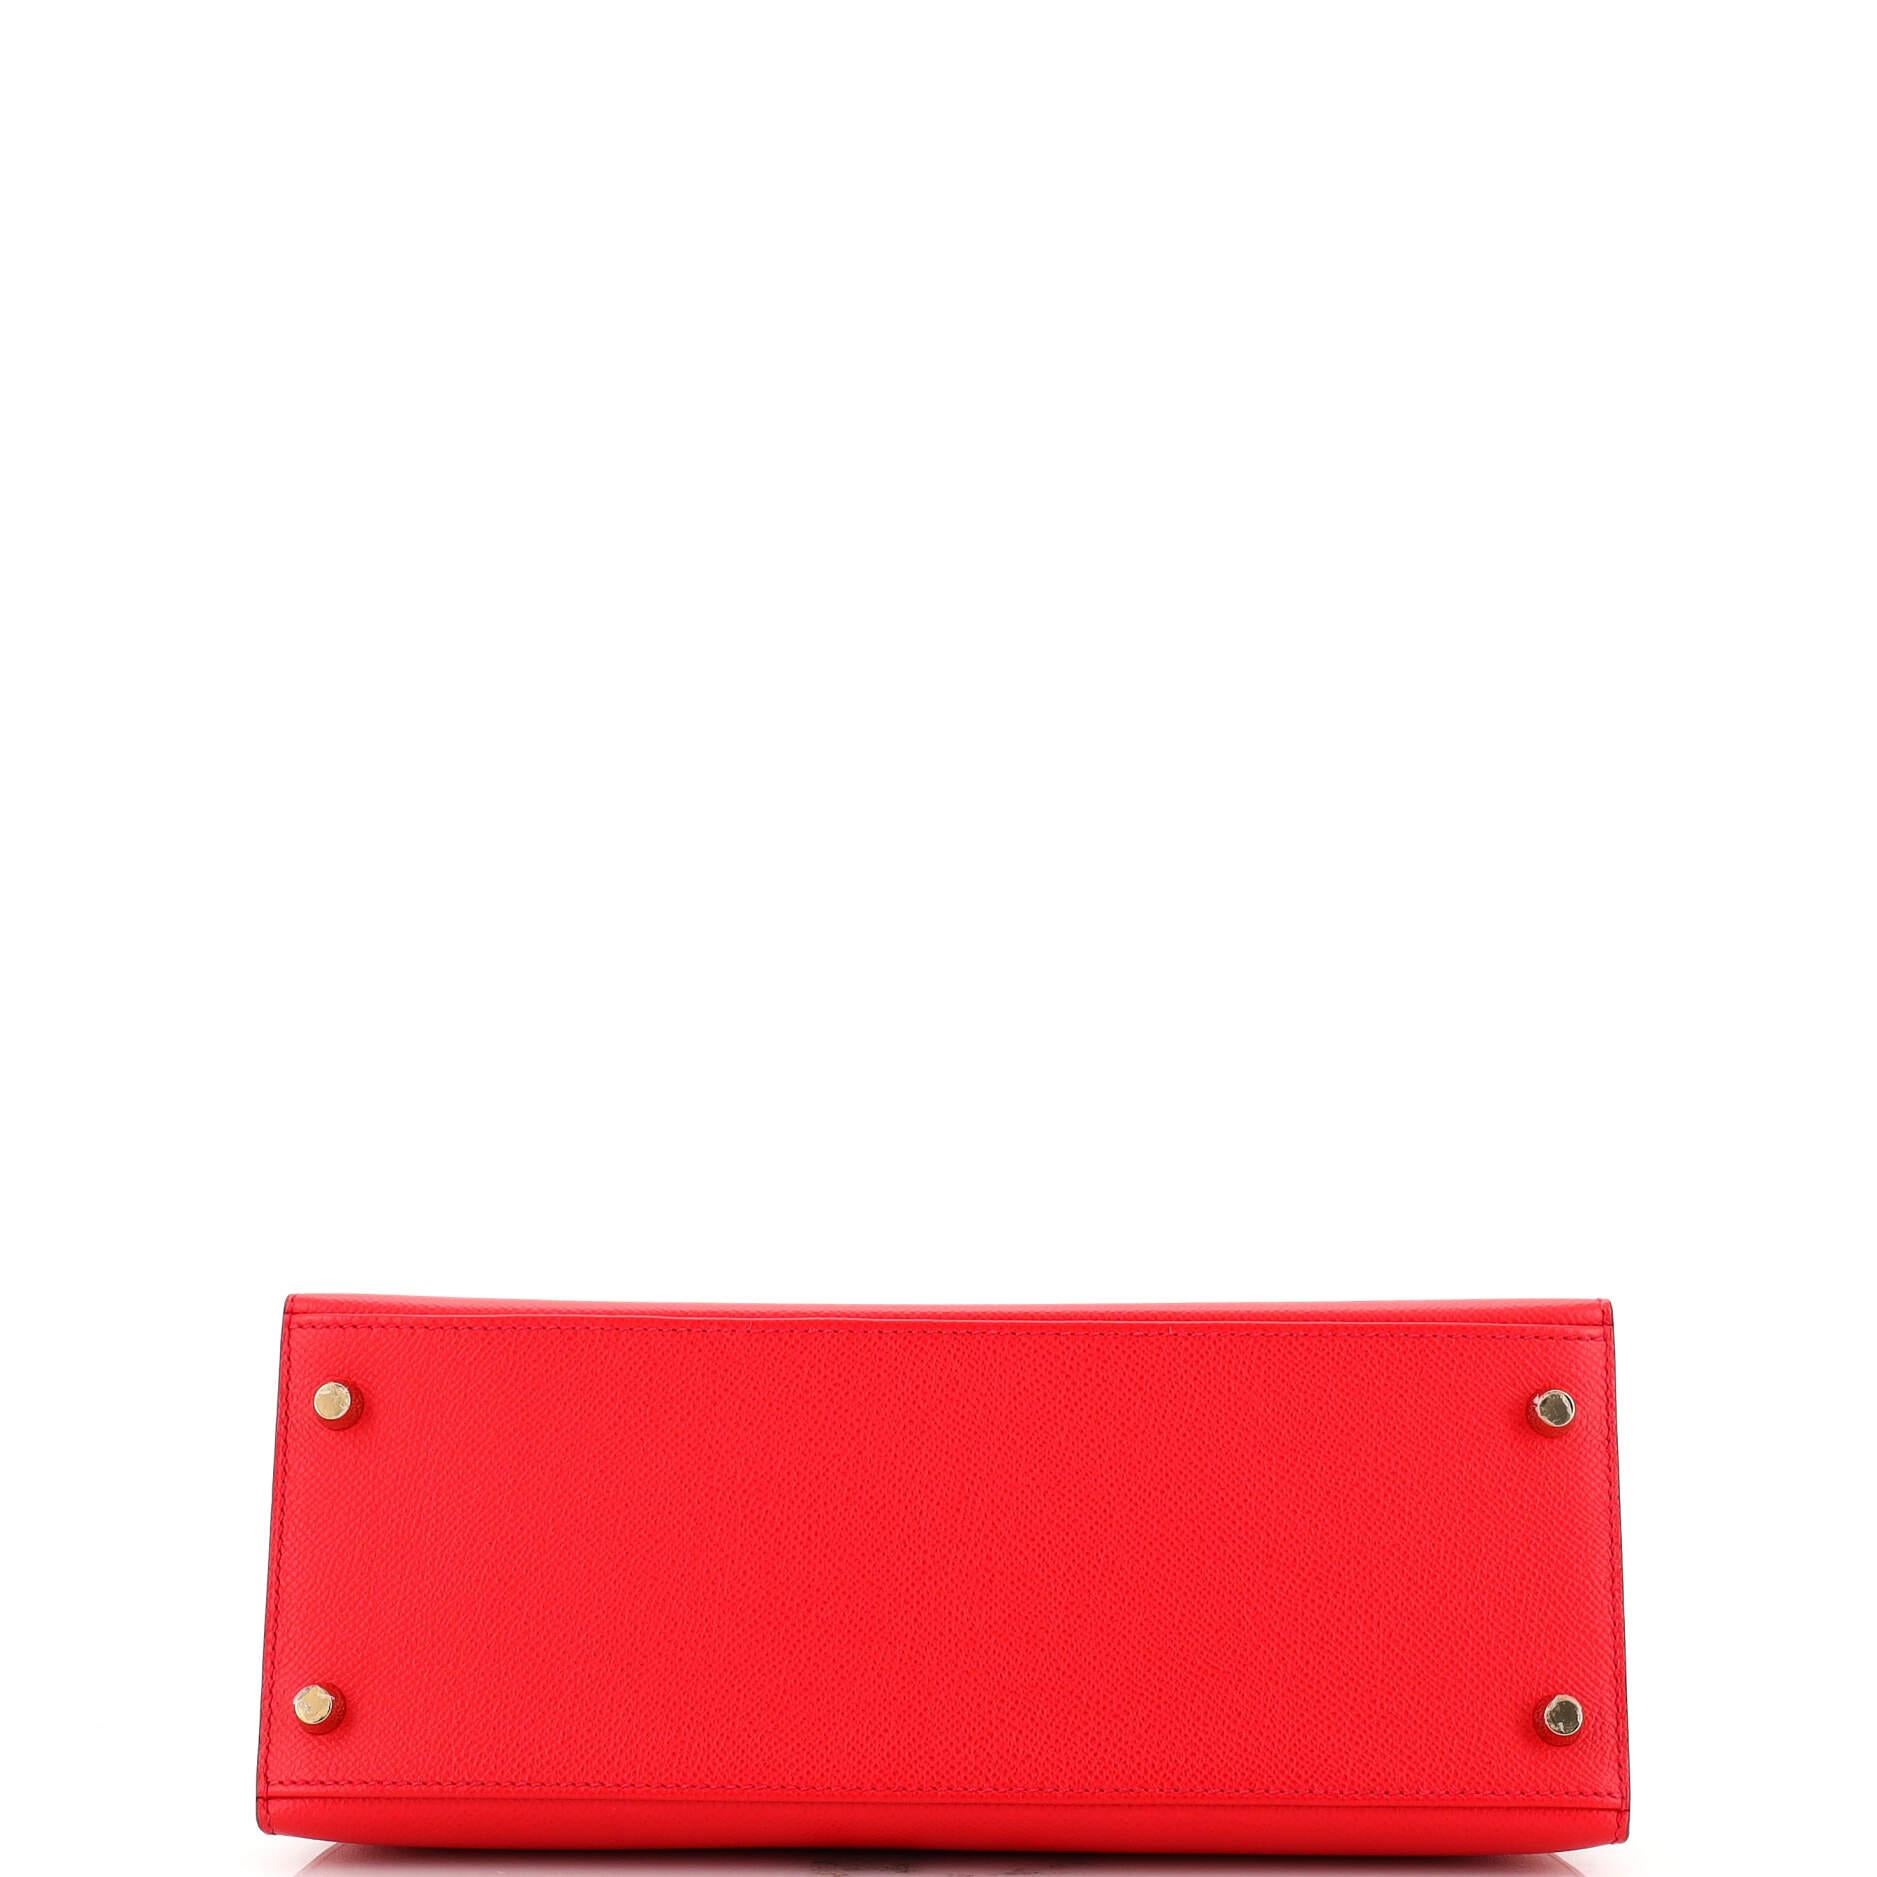 Women's Hermes Kelly Handbag Bicolor Epsom with Brushed Gold Hardware 28